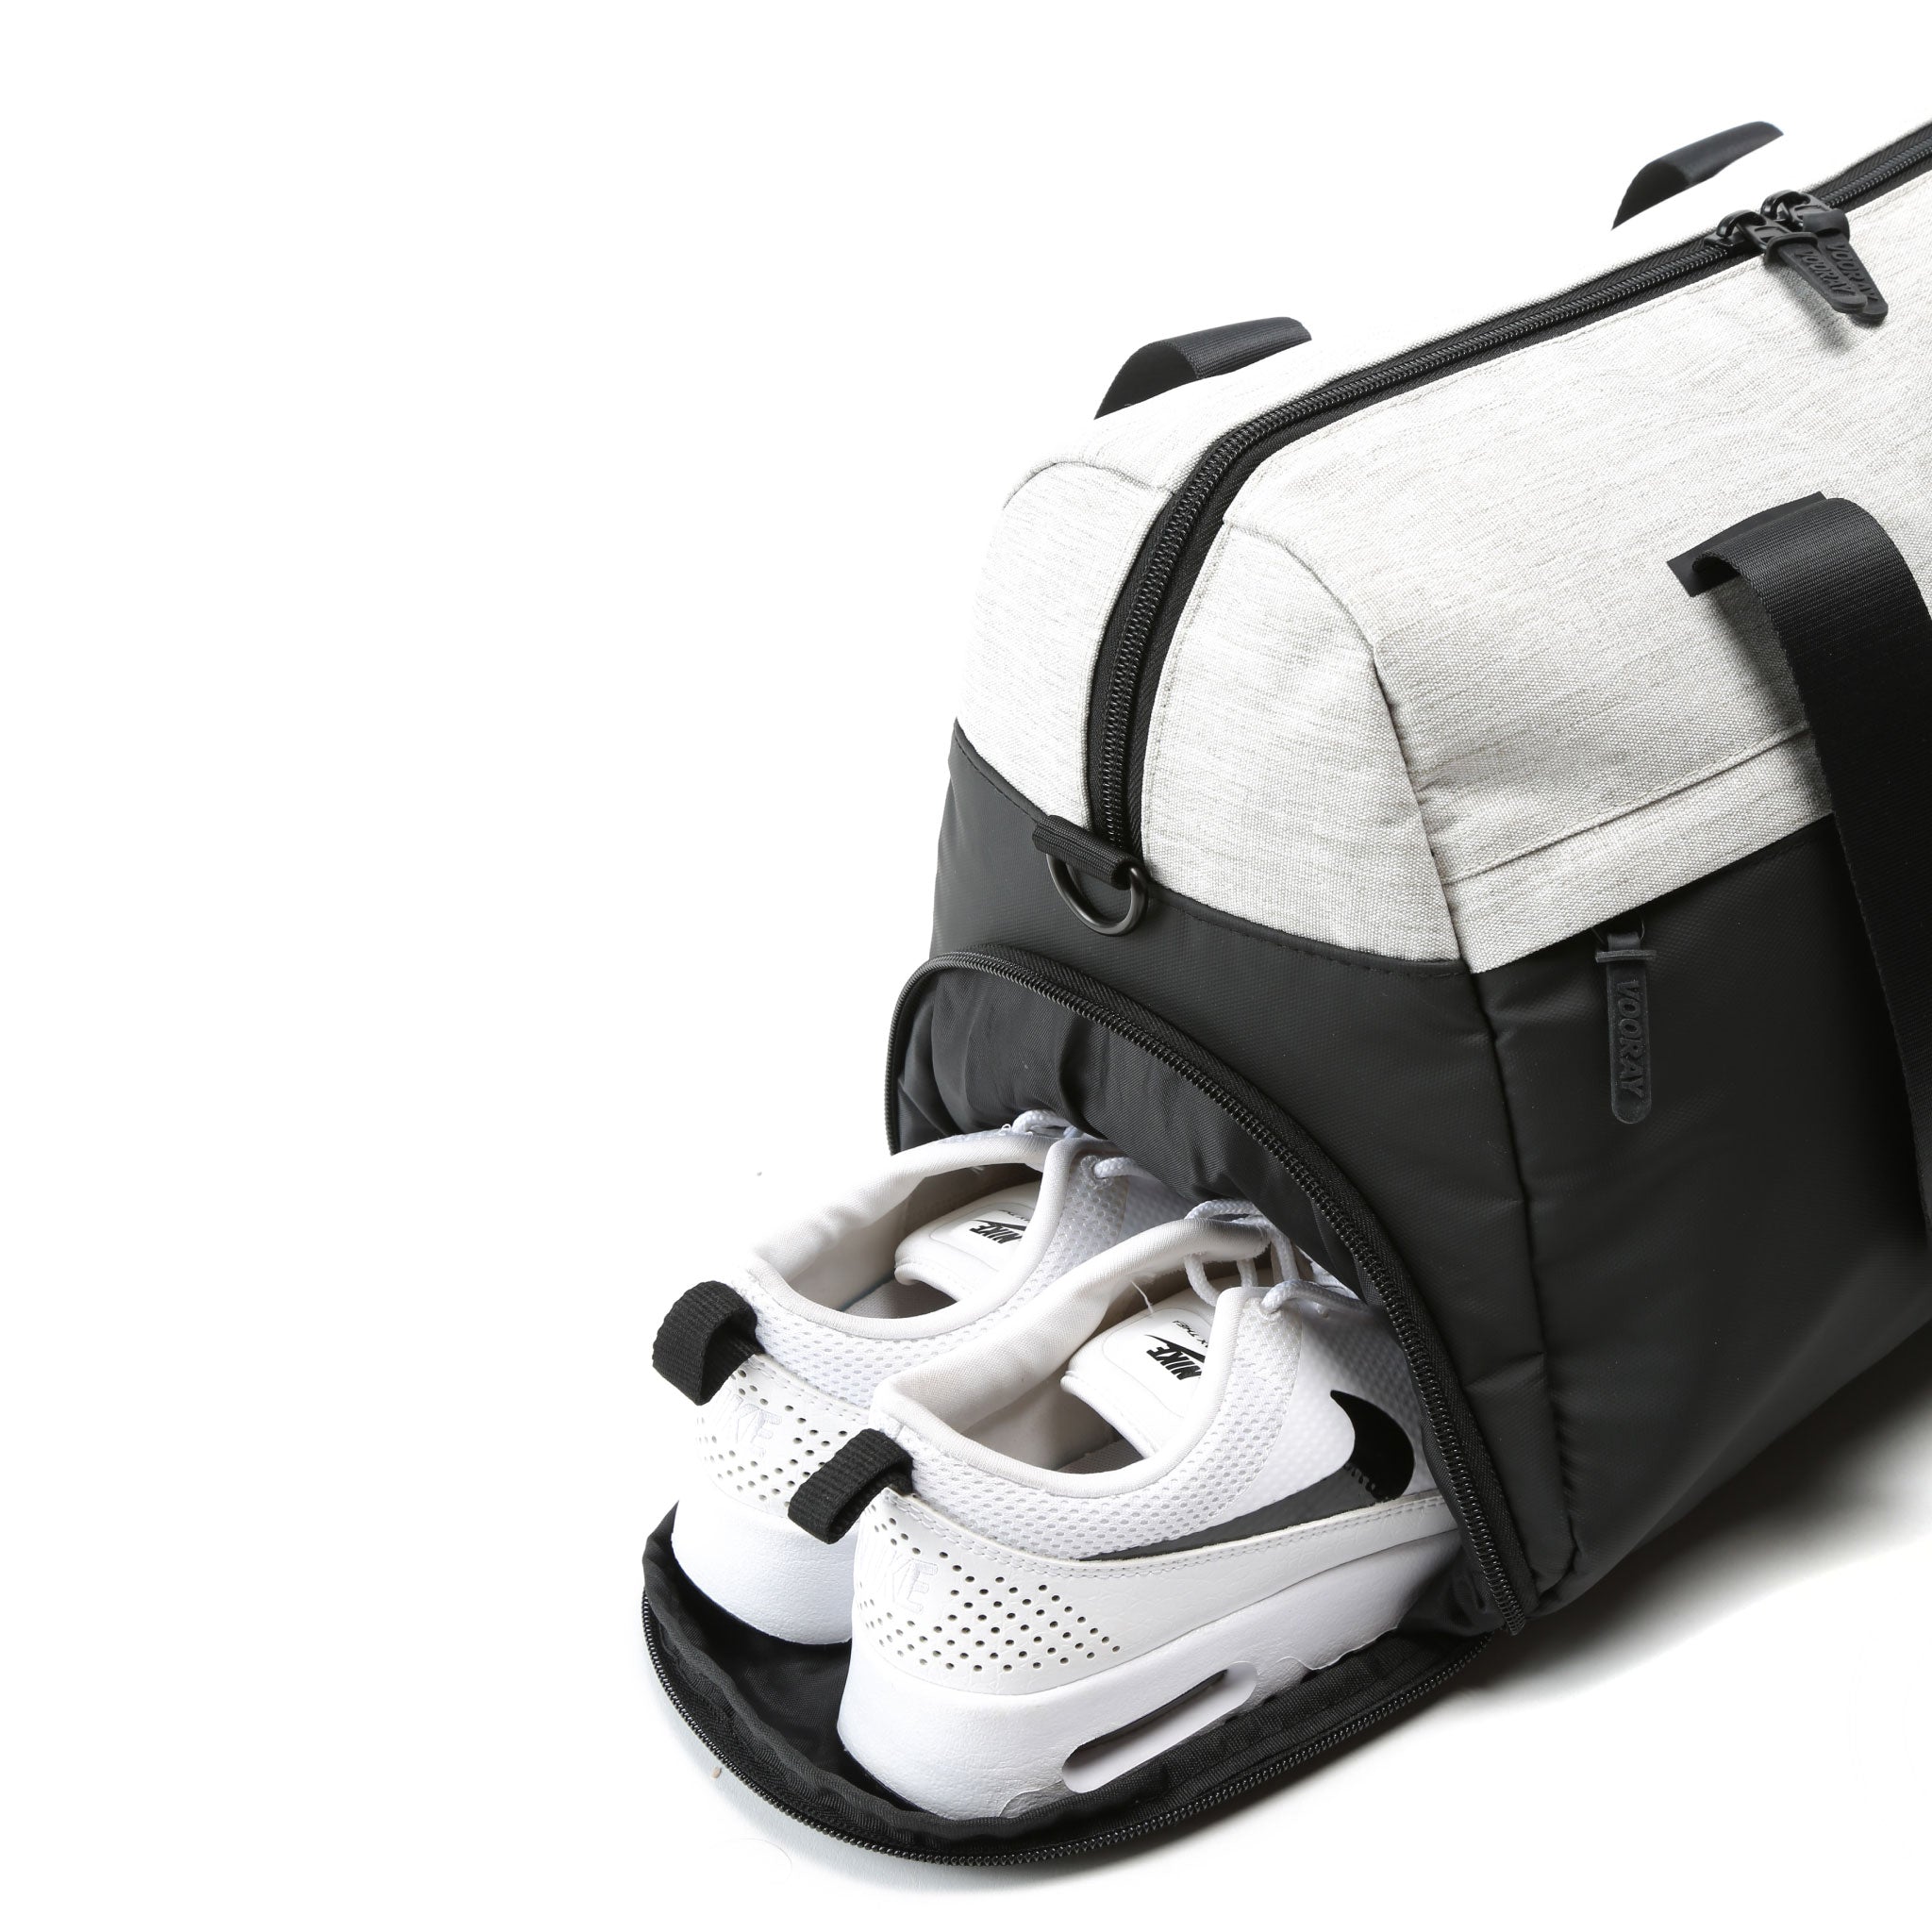 Vooray Trainer Duffel - 25 L Sporttas met schoenenvak & waterdicht compartiment